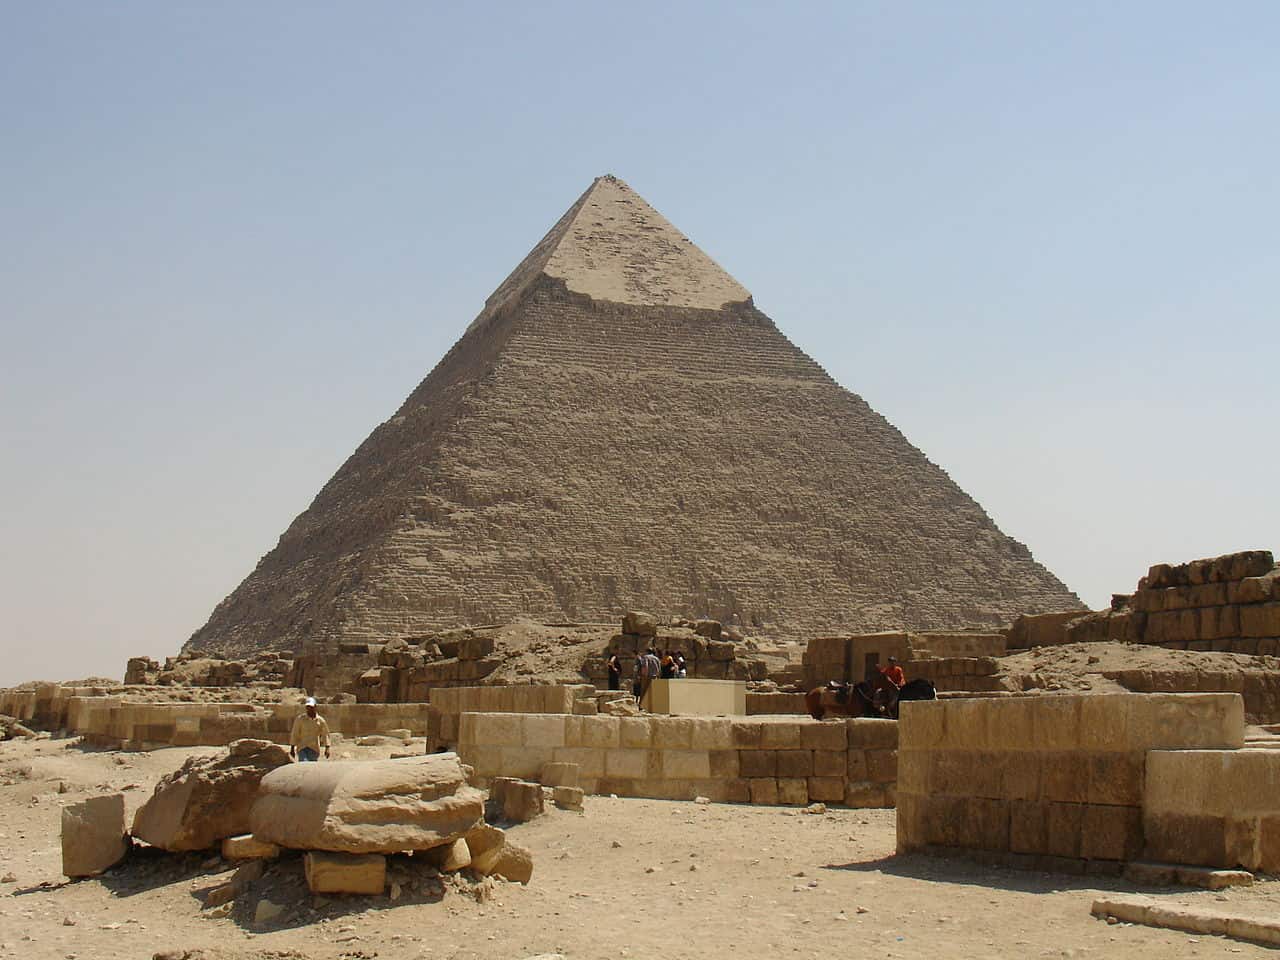 Khafre's Pyramid. Image Credit Wikipedia